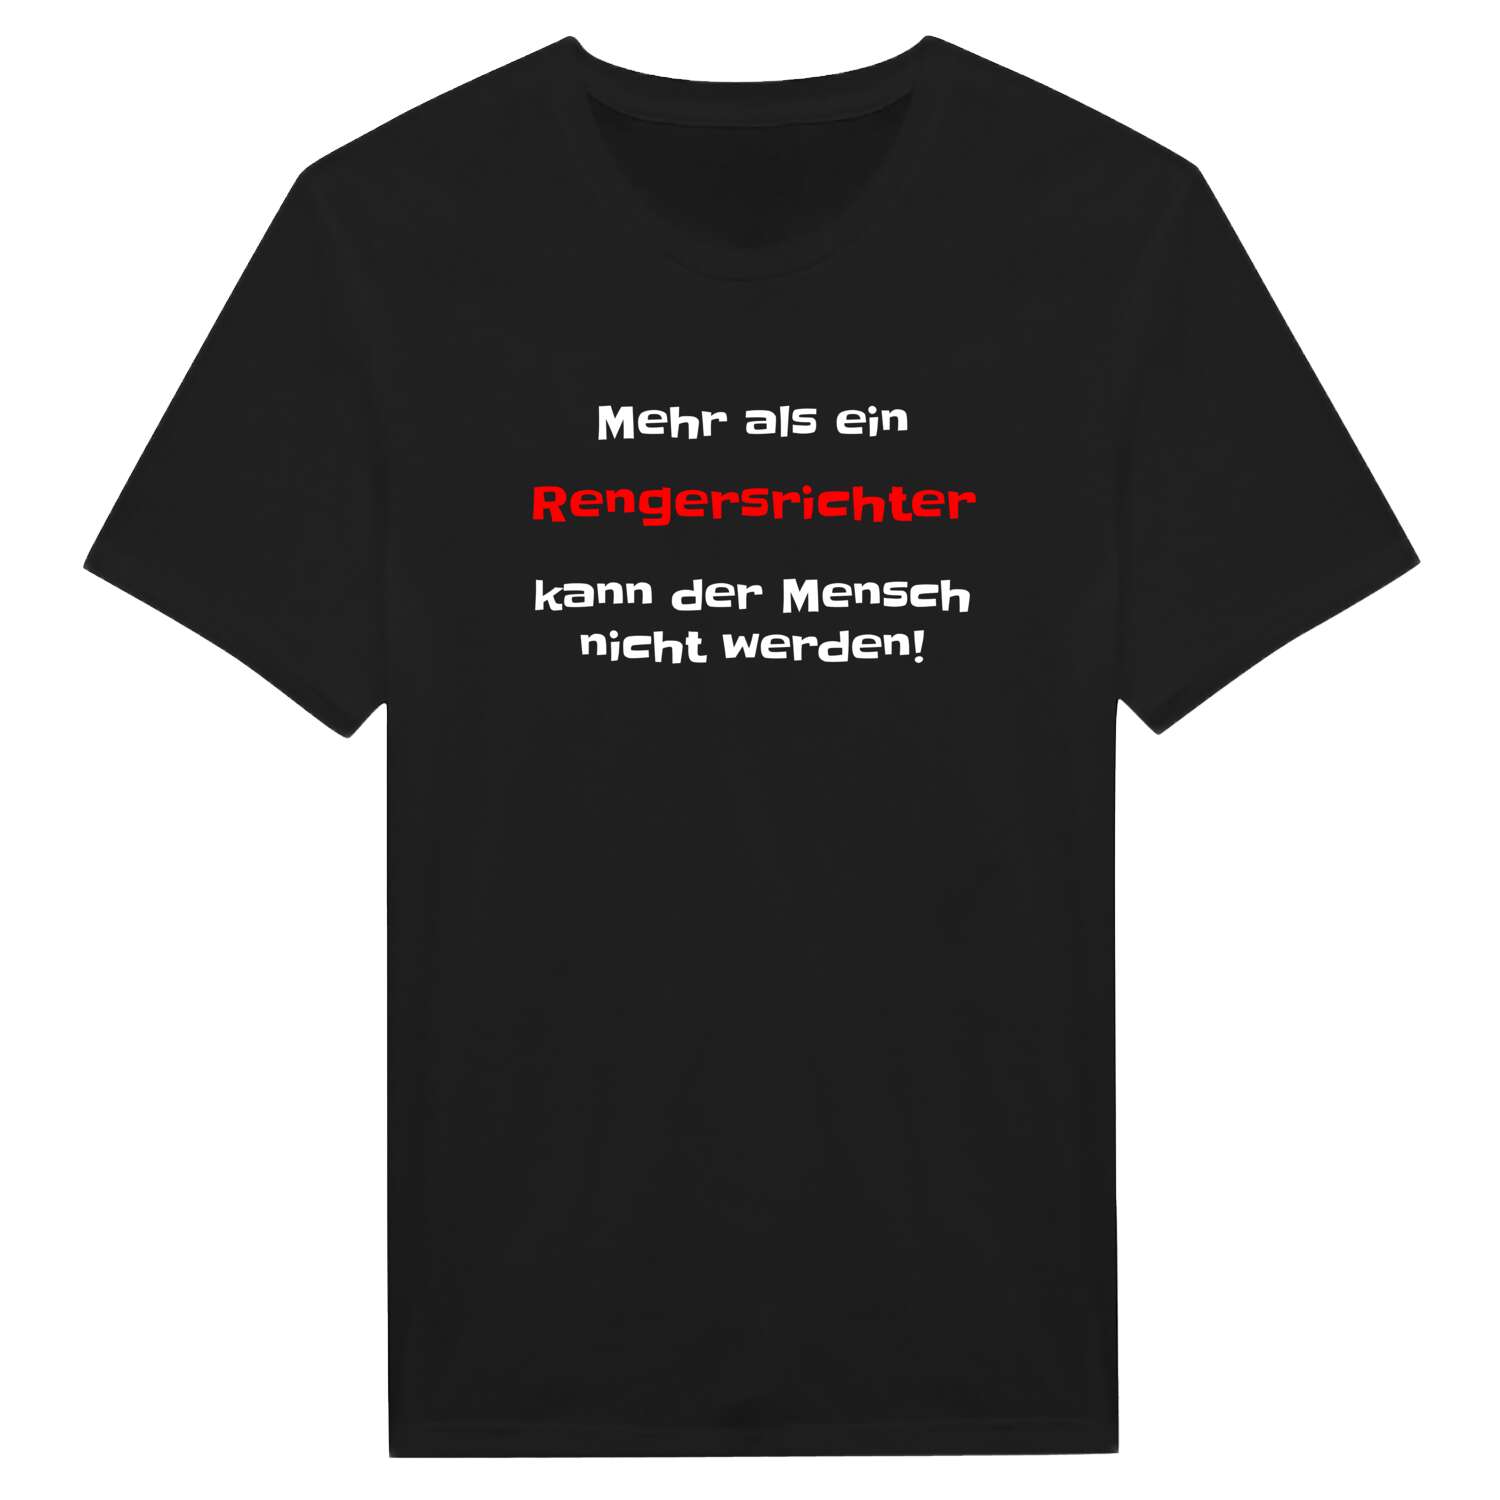 Rengersricht T-Shirt »Mehr als ein«